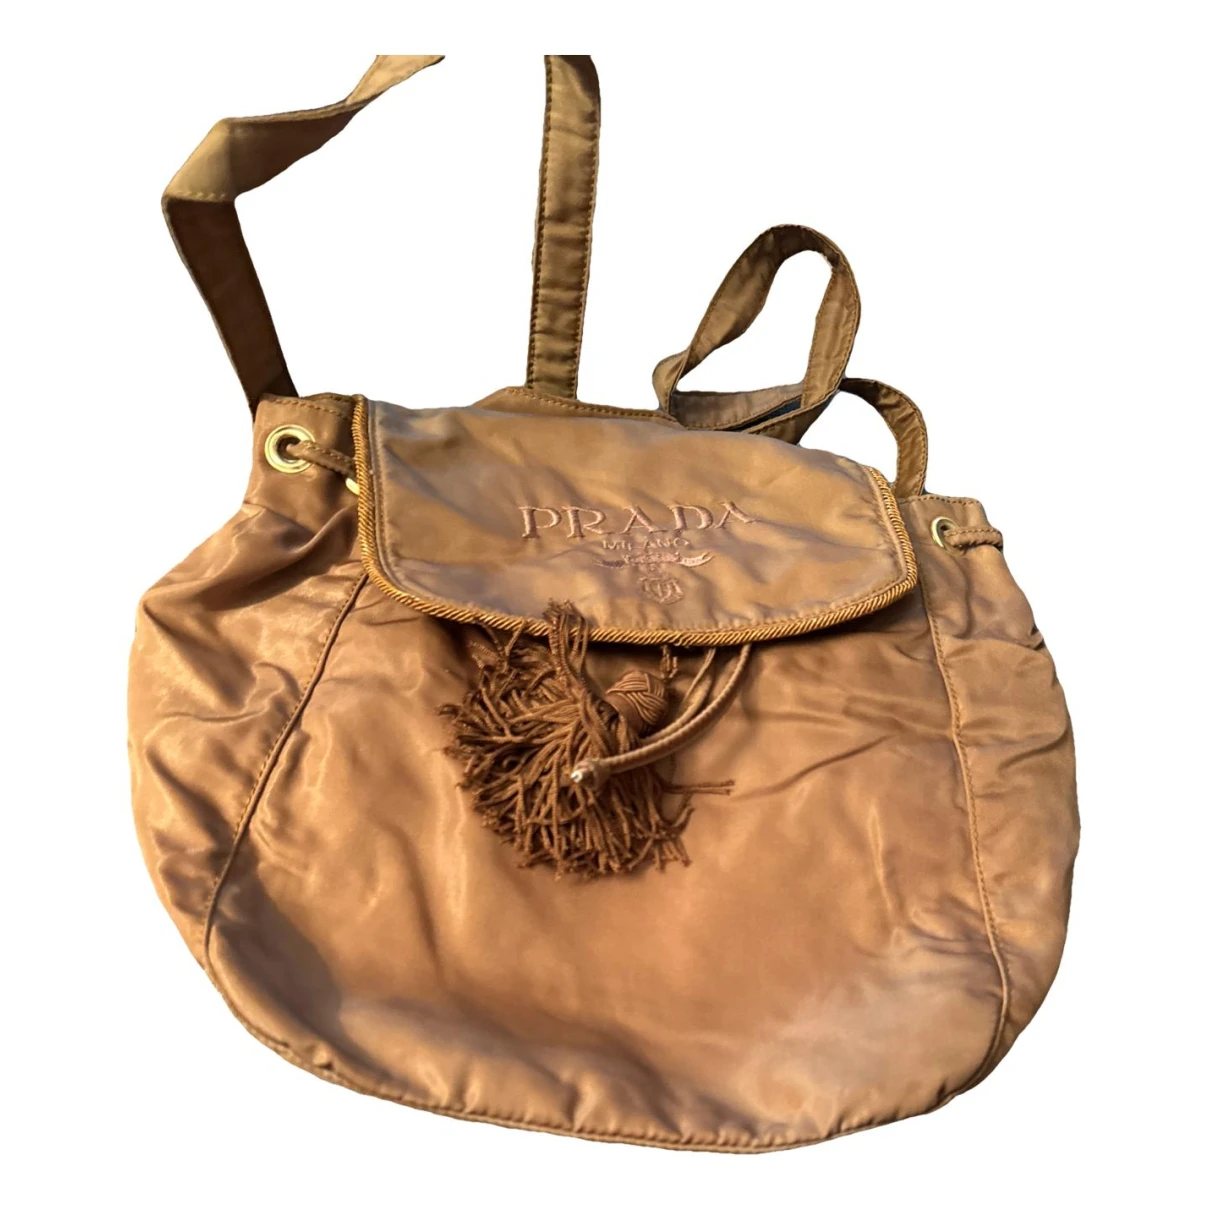 Pre-owned Prada Cloth Backpack In Brown